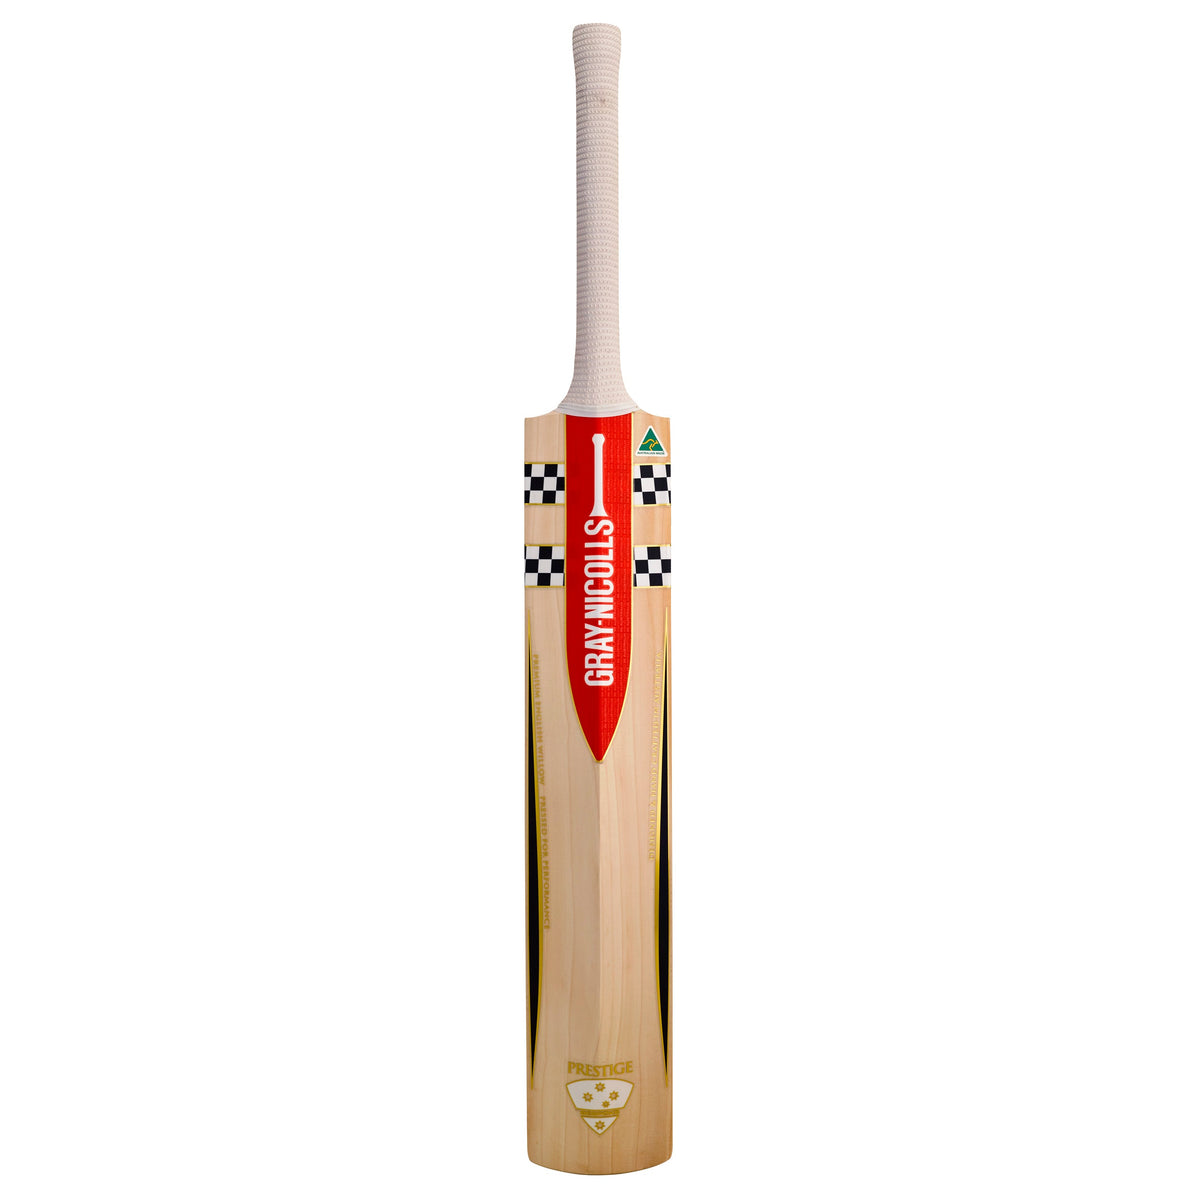 Cricket Bat Gray Nicolls Prestige Short Handle Natural